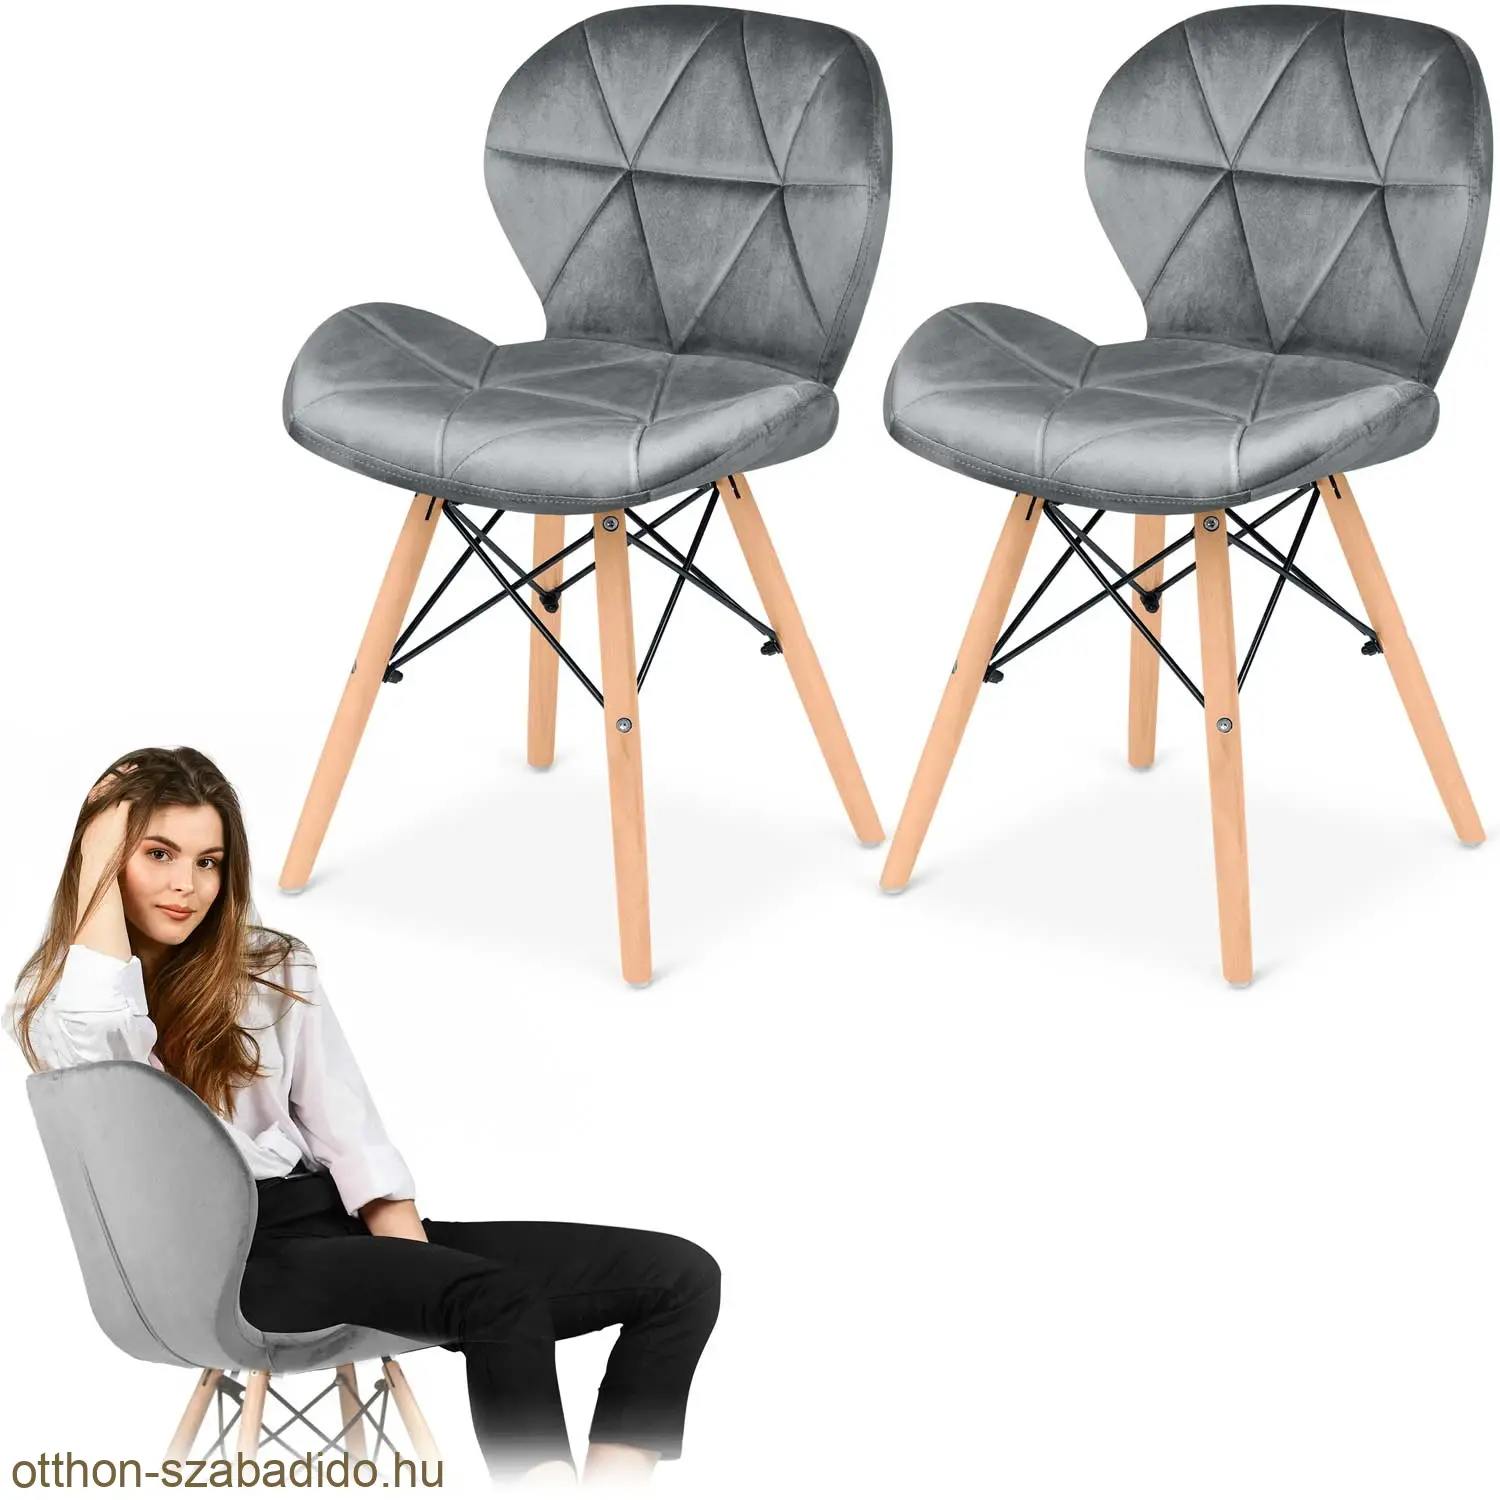 SOFOTEL modern skandináv stílusú szék, velúr, Sigma - szürke 2 db